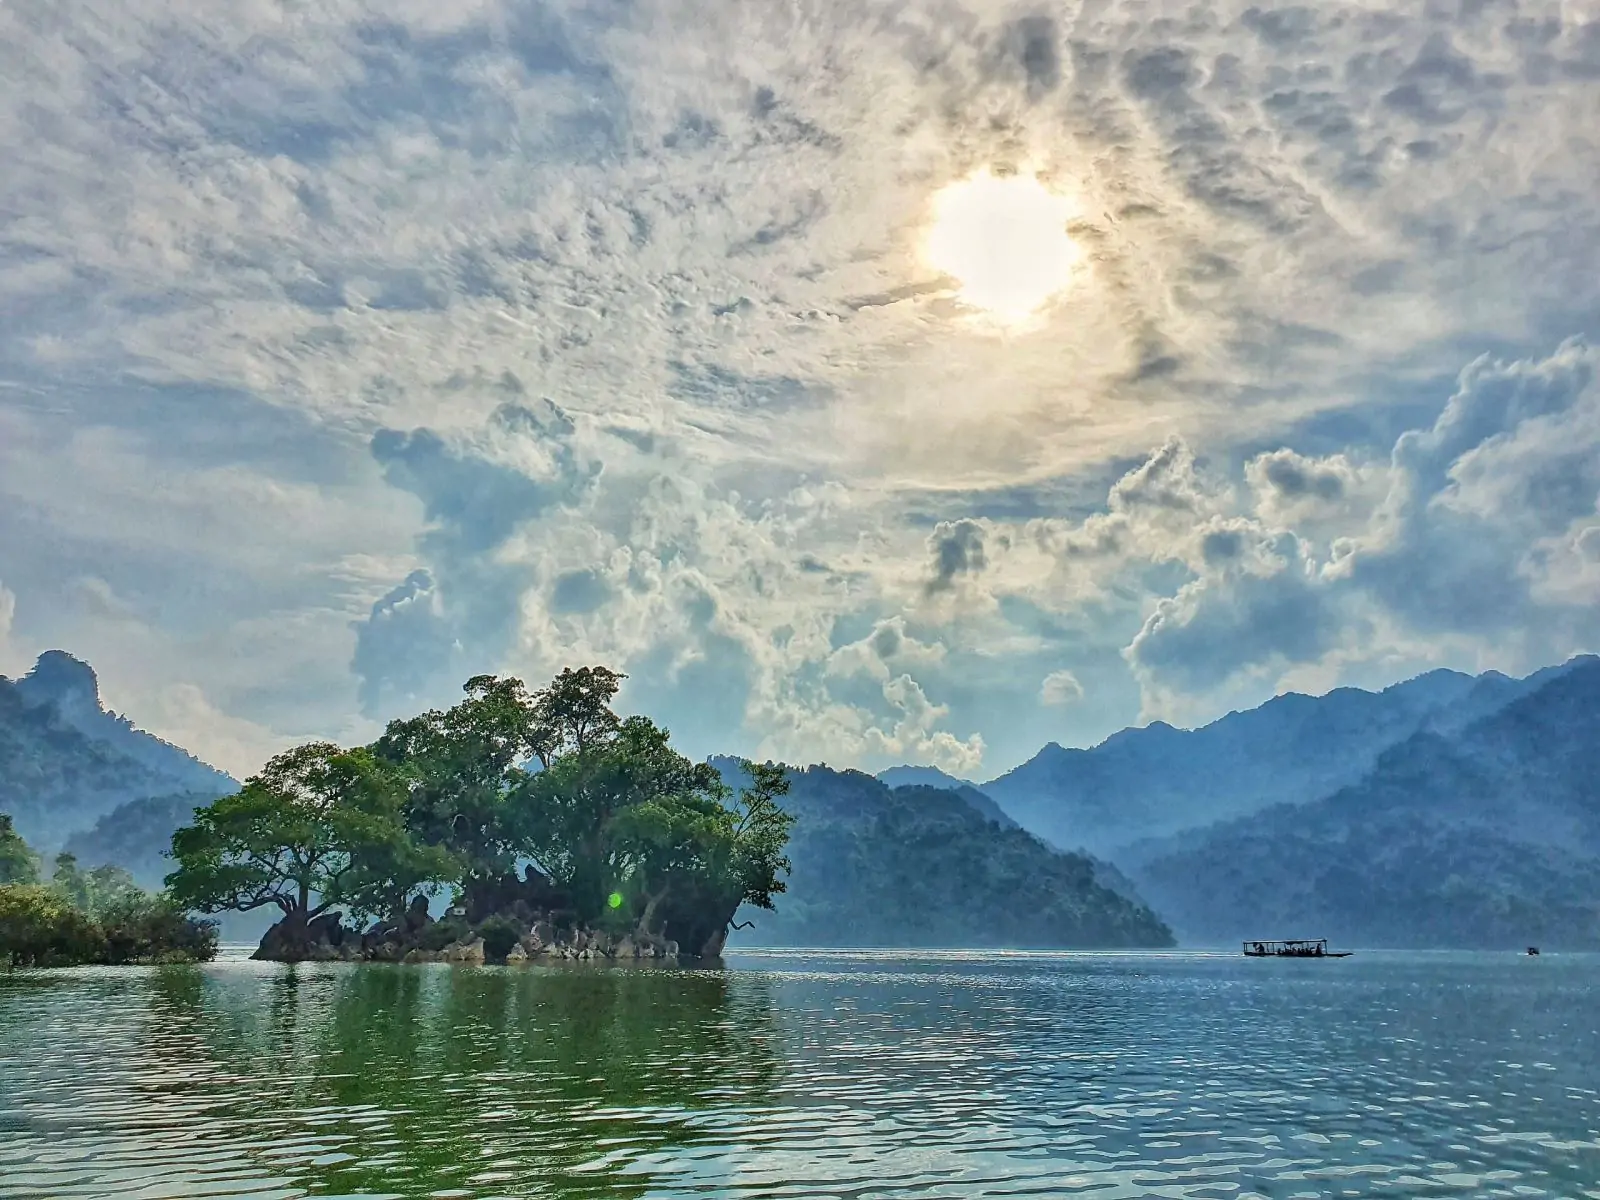 Day 7: Cao Bang - Ba Be Lake